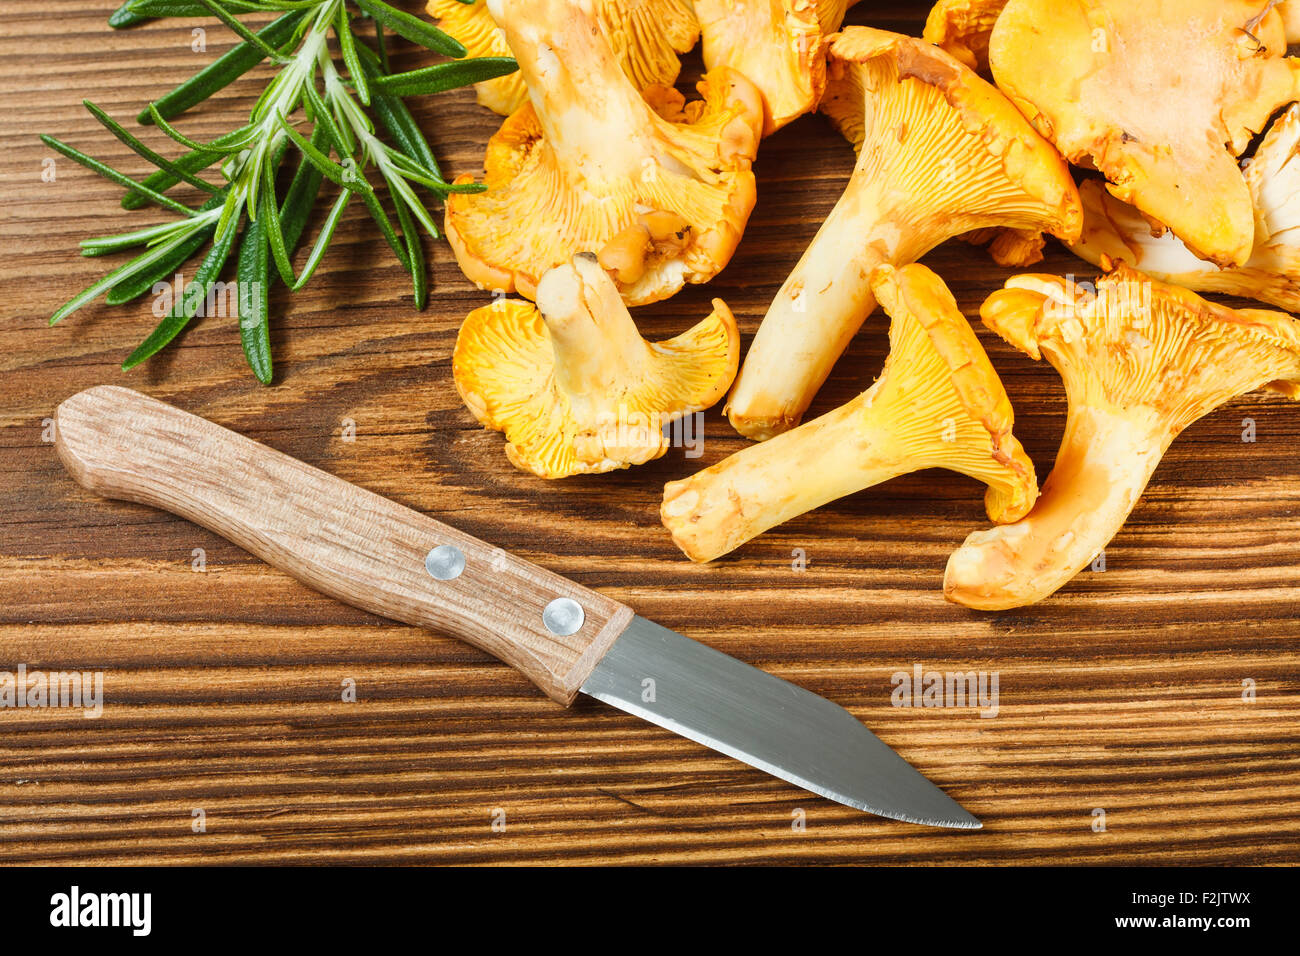 Finferli giallo e il coltello sul tavolo di legno Foto Stock